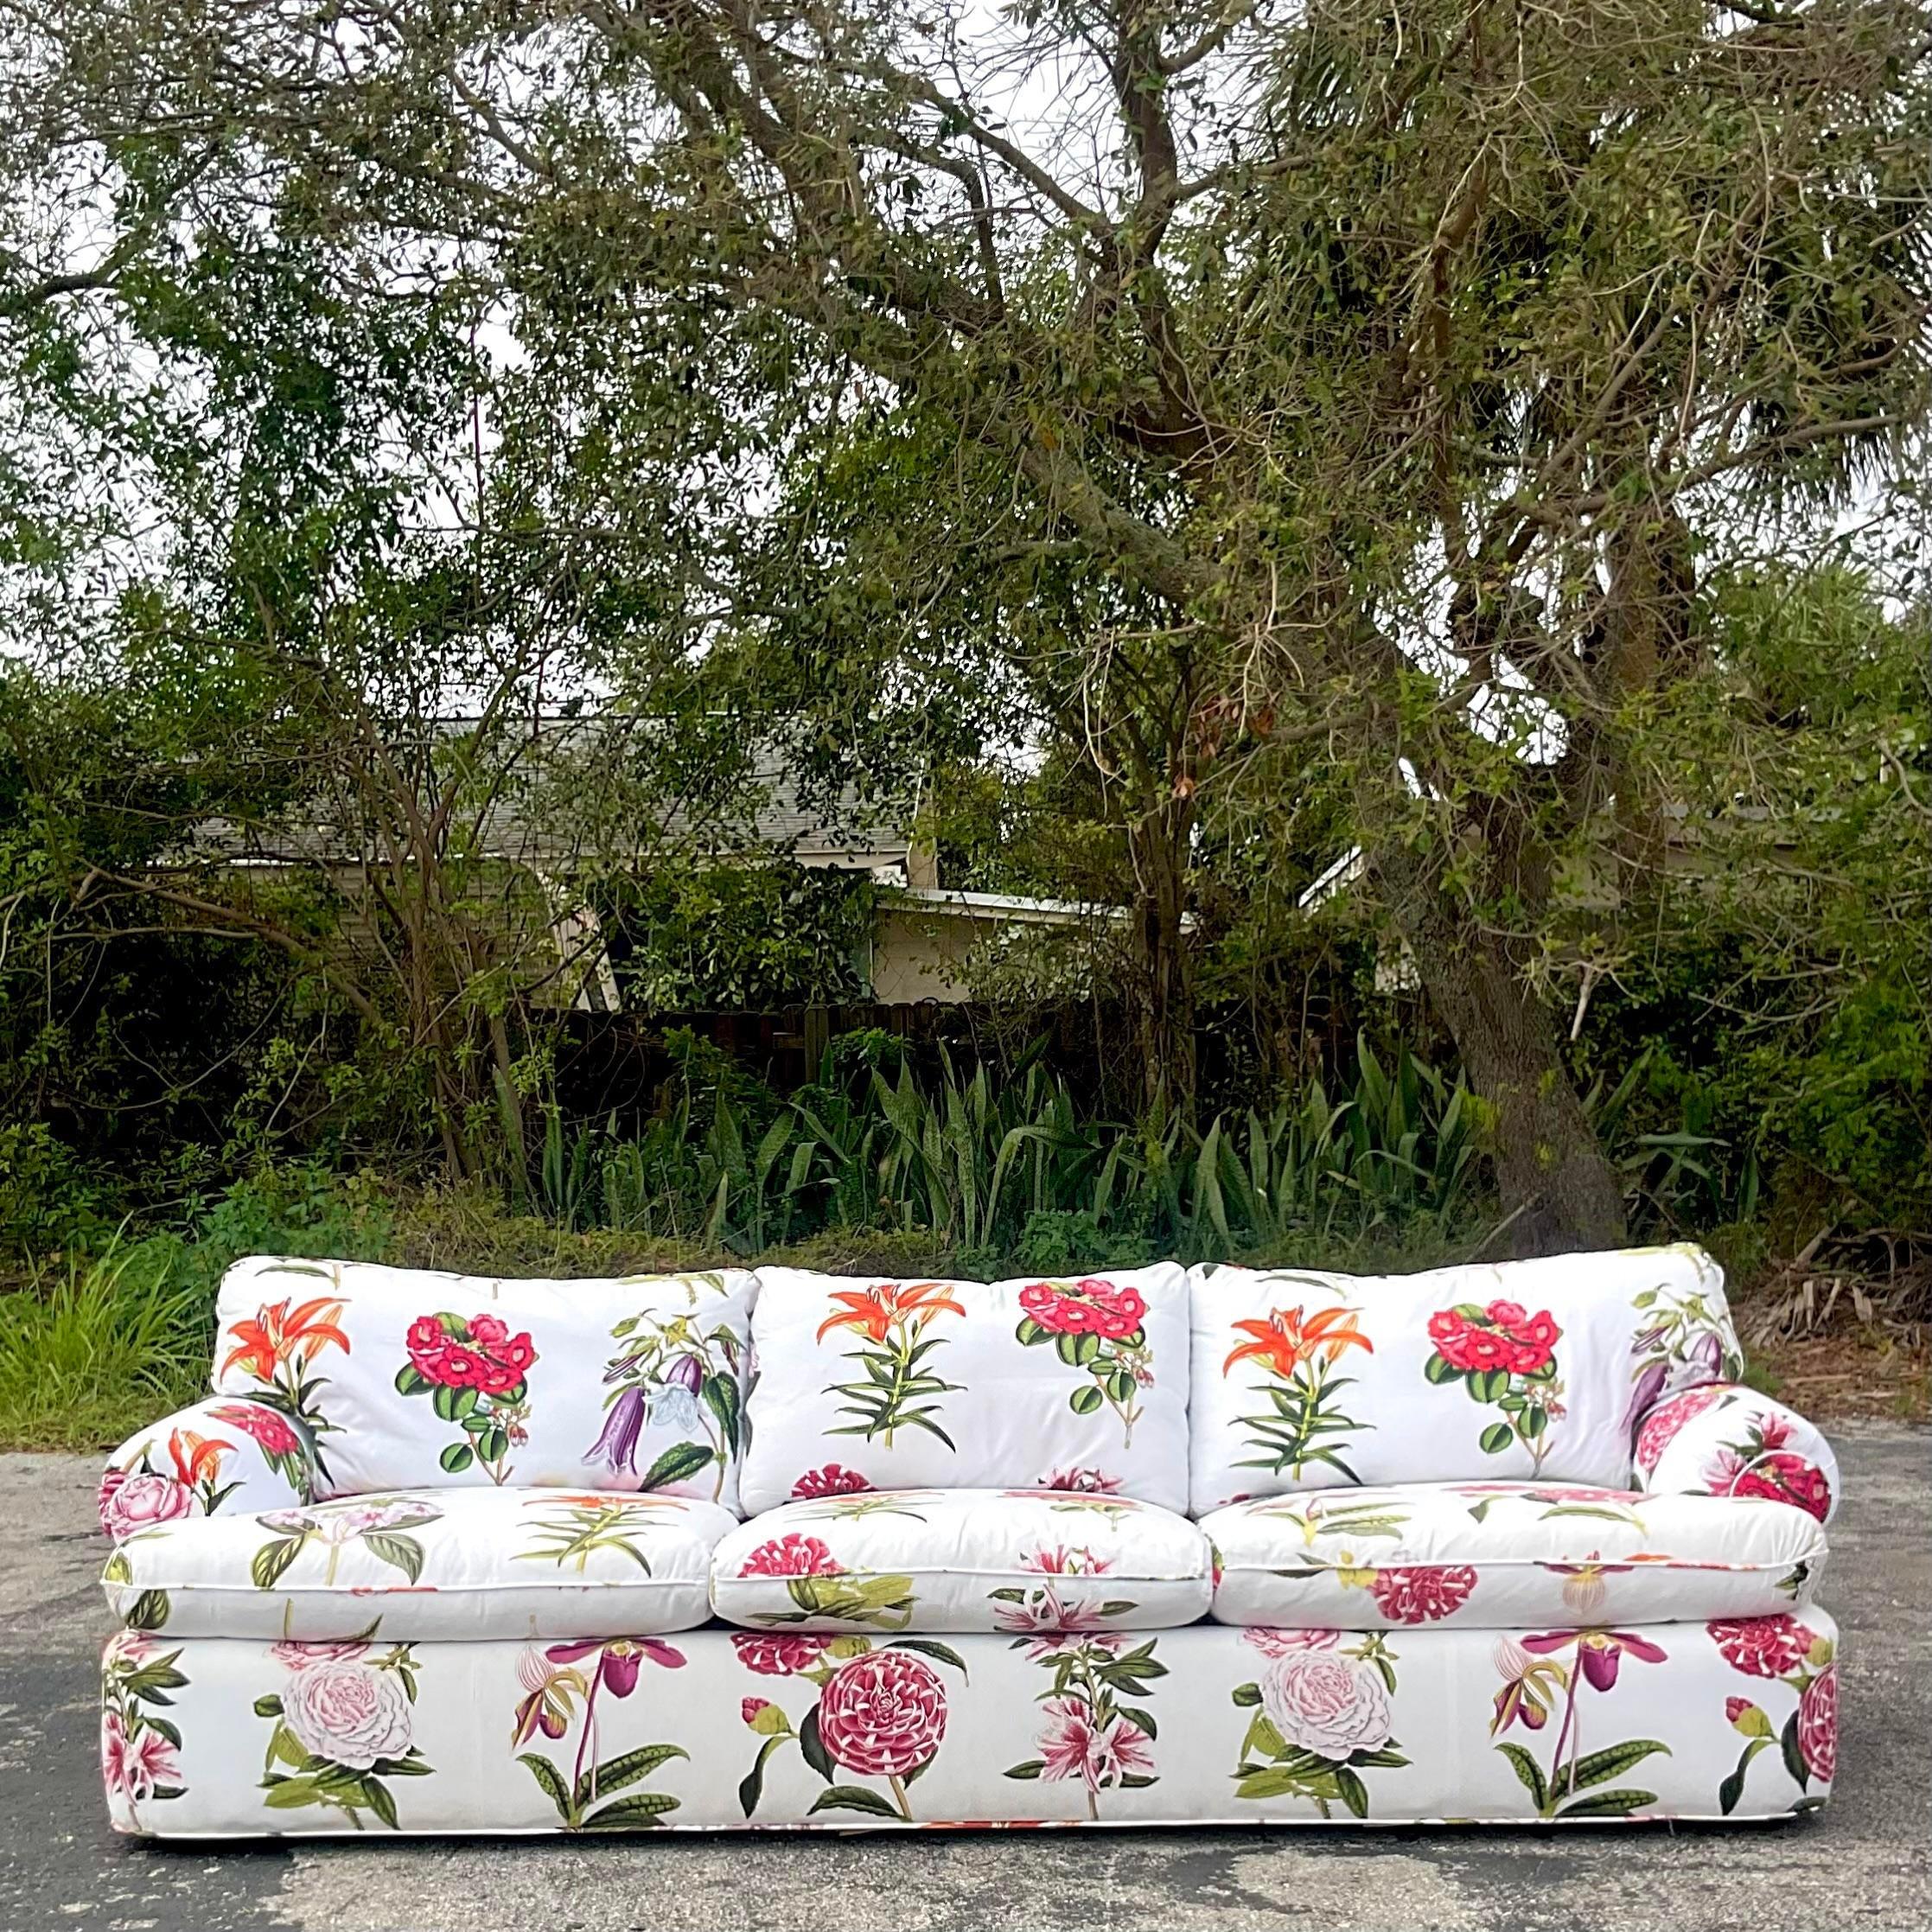 Ein atemberaubendes Vintage-Boho-Sofa. Ein farbenprächtiger Blumendruck auf einem Piqué-Baumwollgewebe. Extra lang für extra viel Glamour. Passende Stücke mit demselben Druck sind ebenfalls erhältlich. 